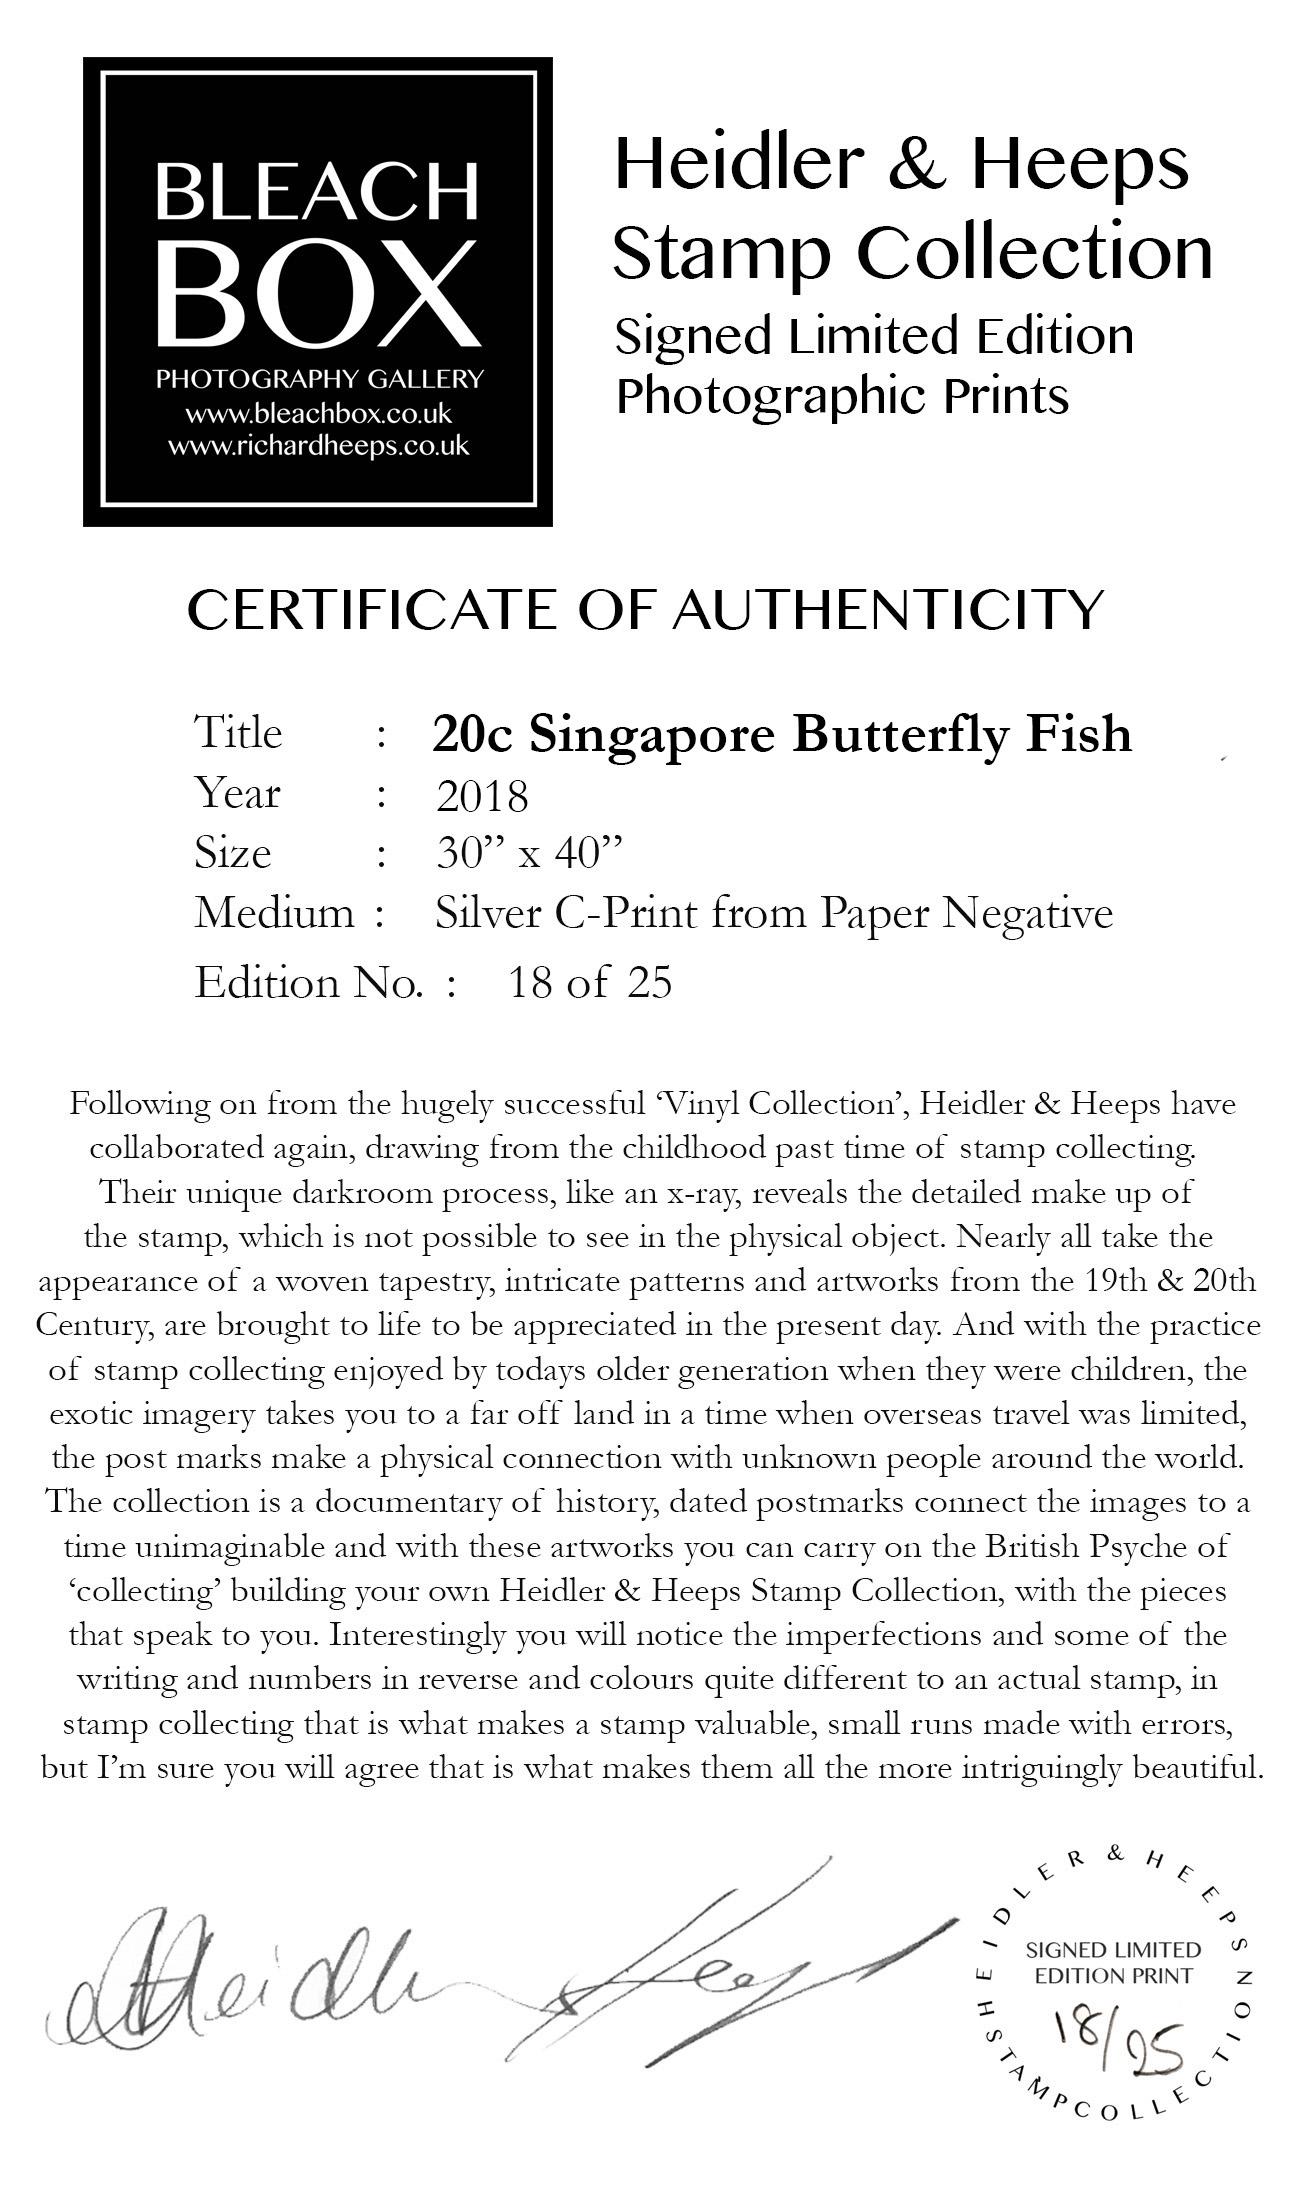 Singapur Singapore Stempel-Kollektion, 20 Karat Singapur Schmetterling Fisch - Pop-Art-Farbfoto – Photograph von Heidler & Heeps